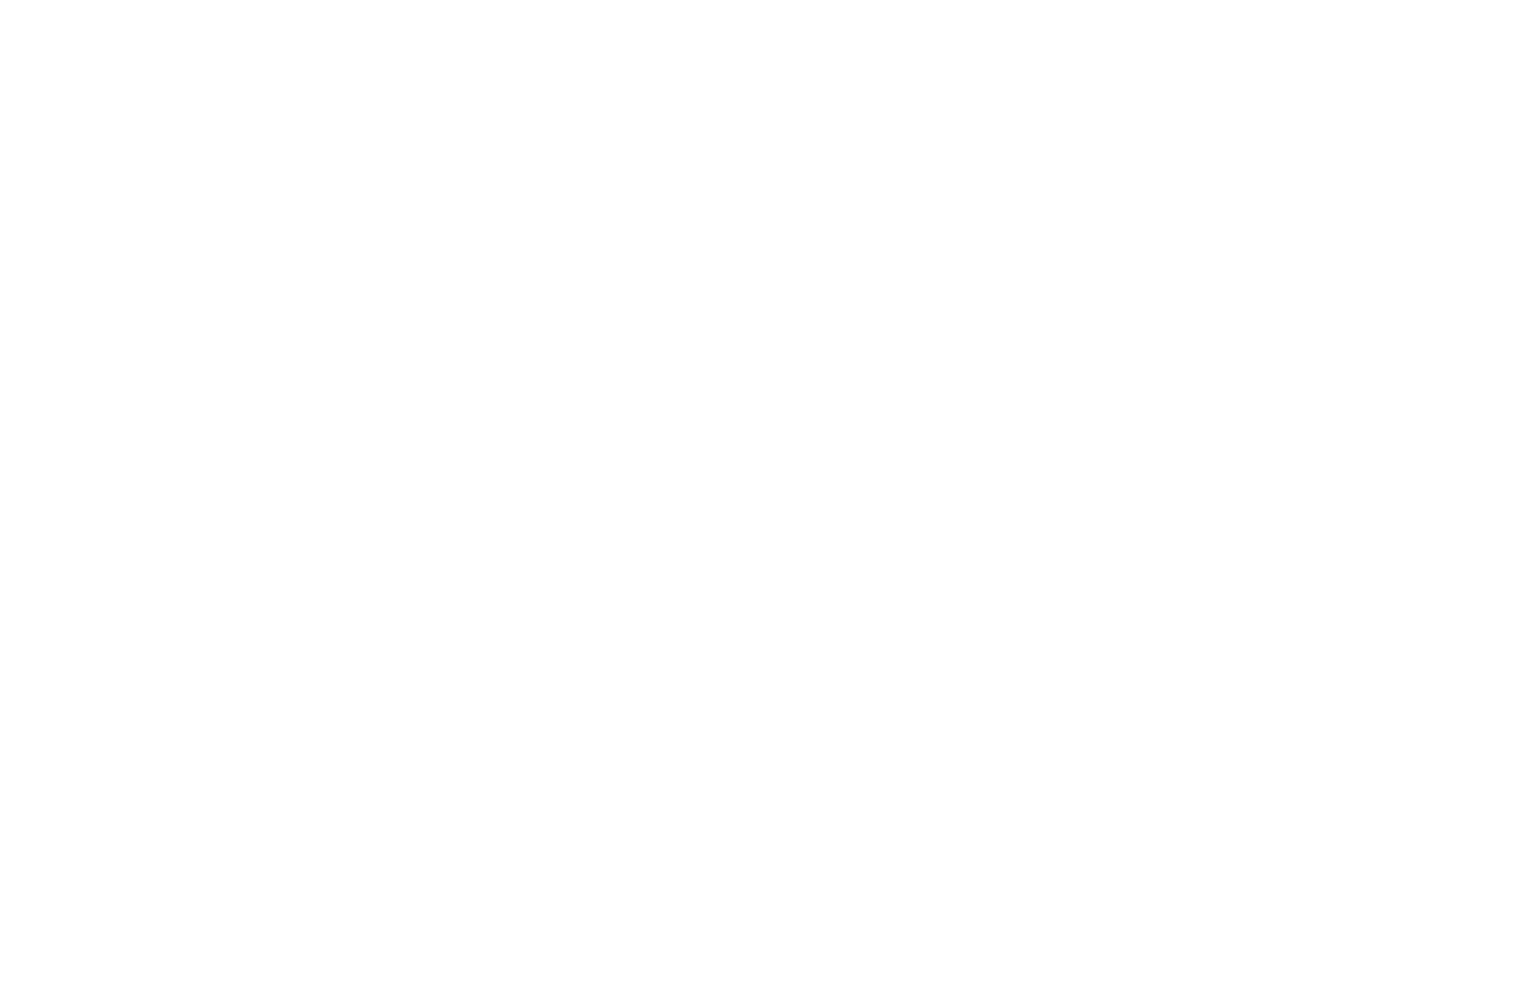 Bill.com logo large for dark backgrounds (transparent PNG)